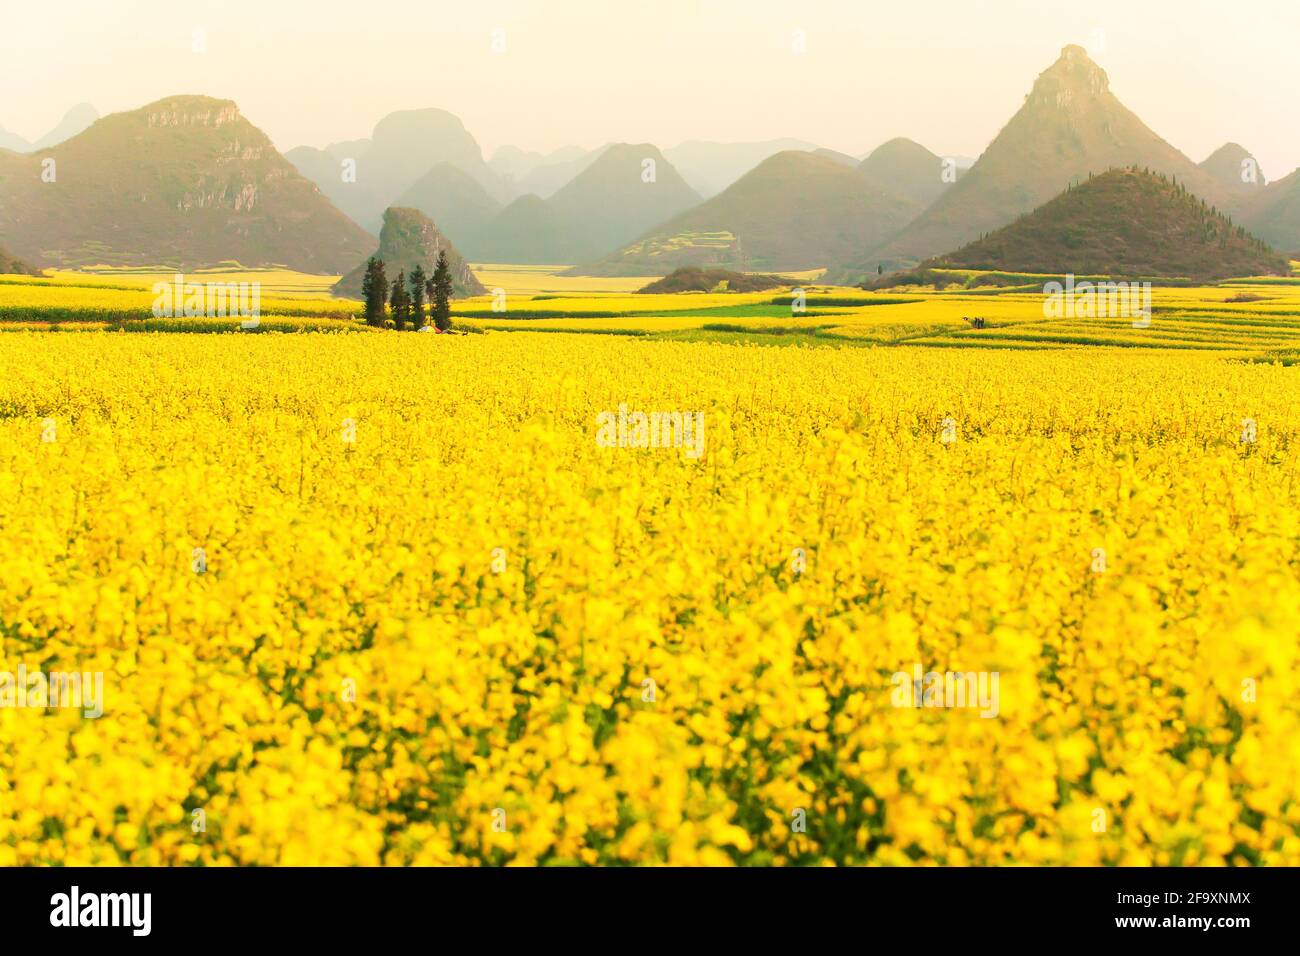 Landschaft mit Senfblumen Felder im Frühling, blühende gelbe Senfblumen in einem Tal bei Sonnenaufgang. Land in Südchina. Stockfoto